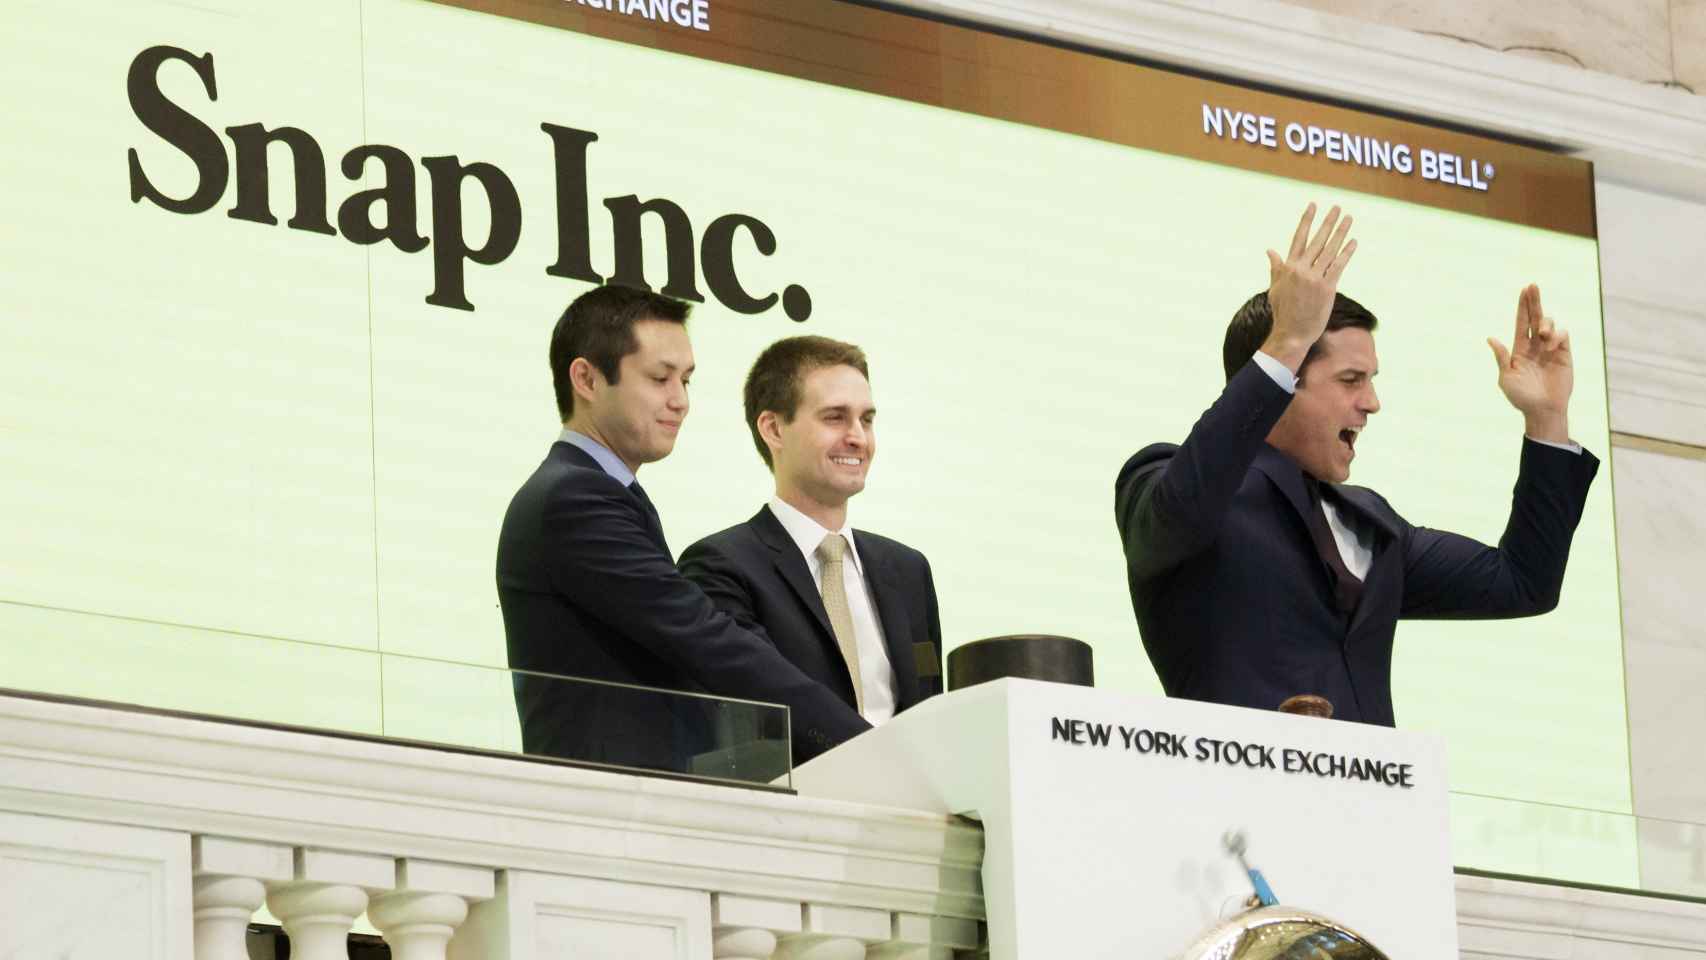 Los cofundadores de Snapchat, Bobby Murphy (i) y Evan Spiegel (c), hacen sonar la campana de apertura el pasado jueves junto al presidente de la Bolsa de Nueva York, Thomas W. Farley (d) / EFE